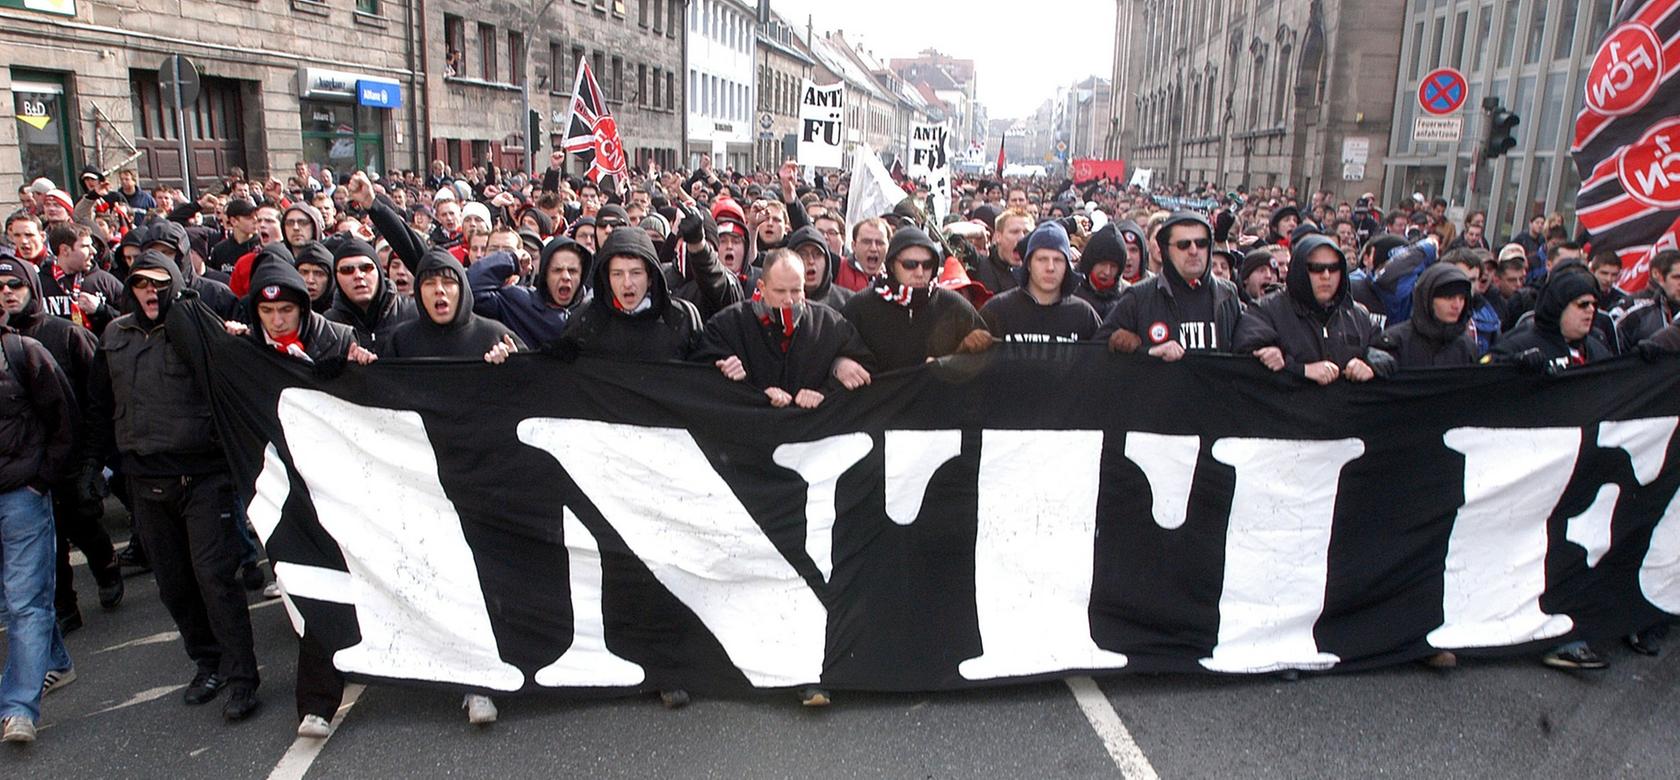 Auf dem Weg ins Stadion riefen die Fans im Jahr 2004 und 2009 Sprechchöre gegen Fürth und trugen ein großes "Antifü"-Banner vor sich her.